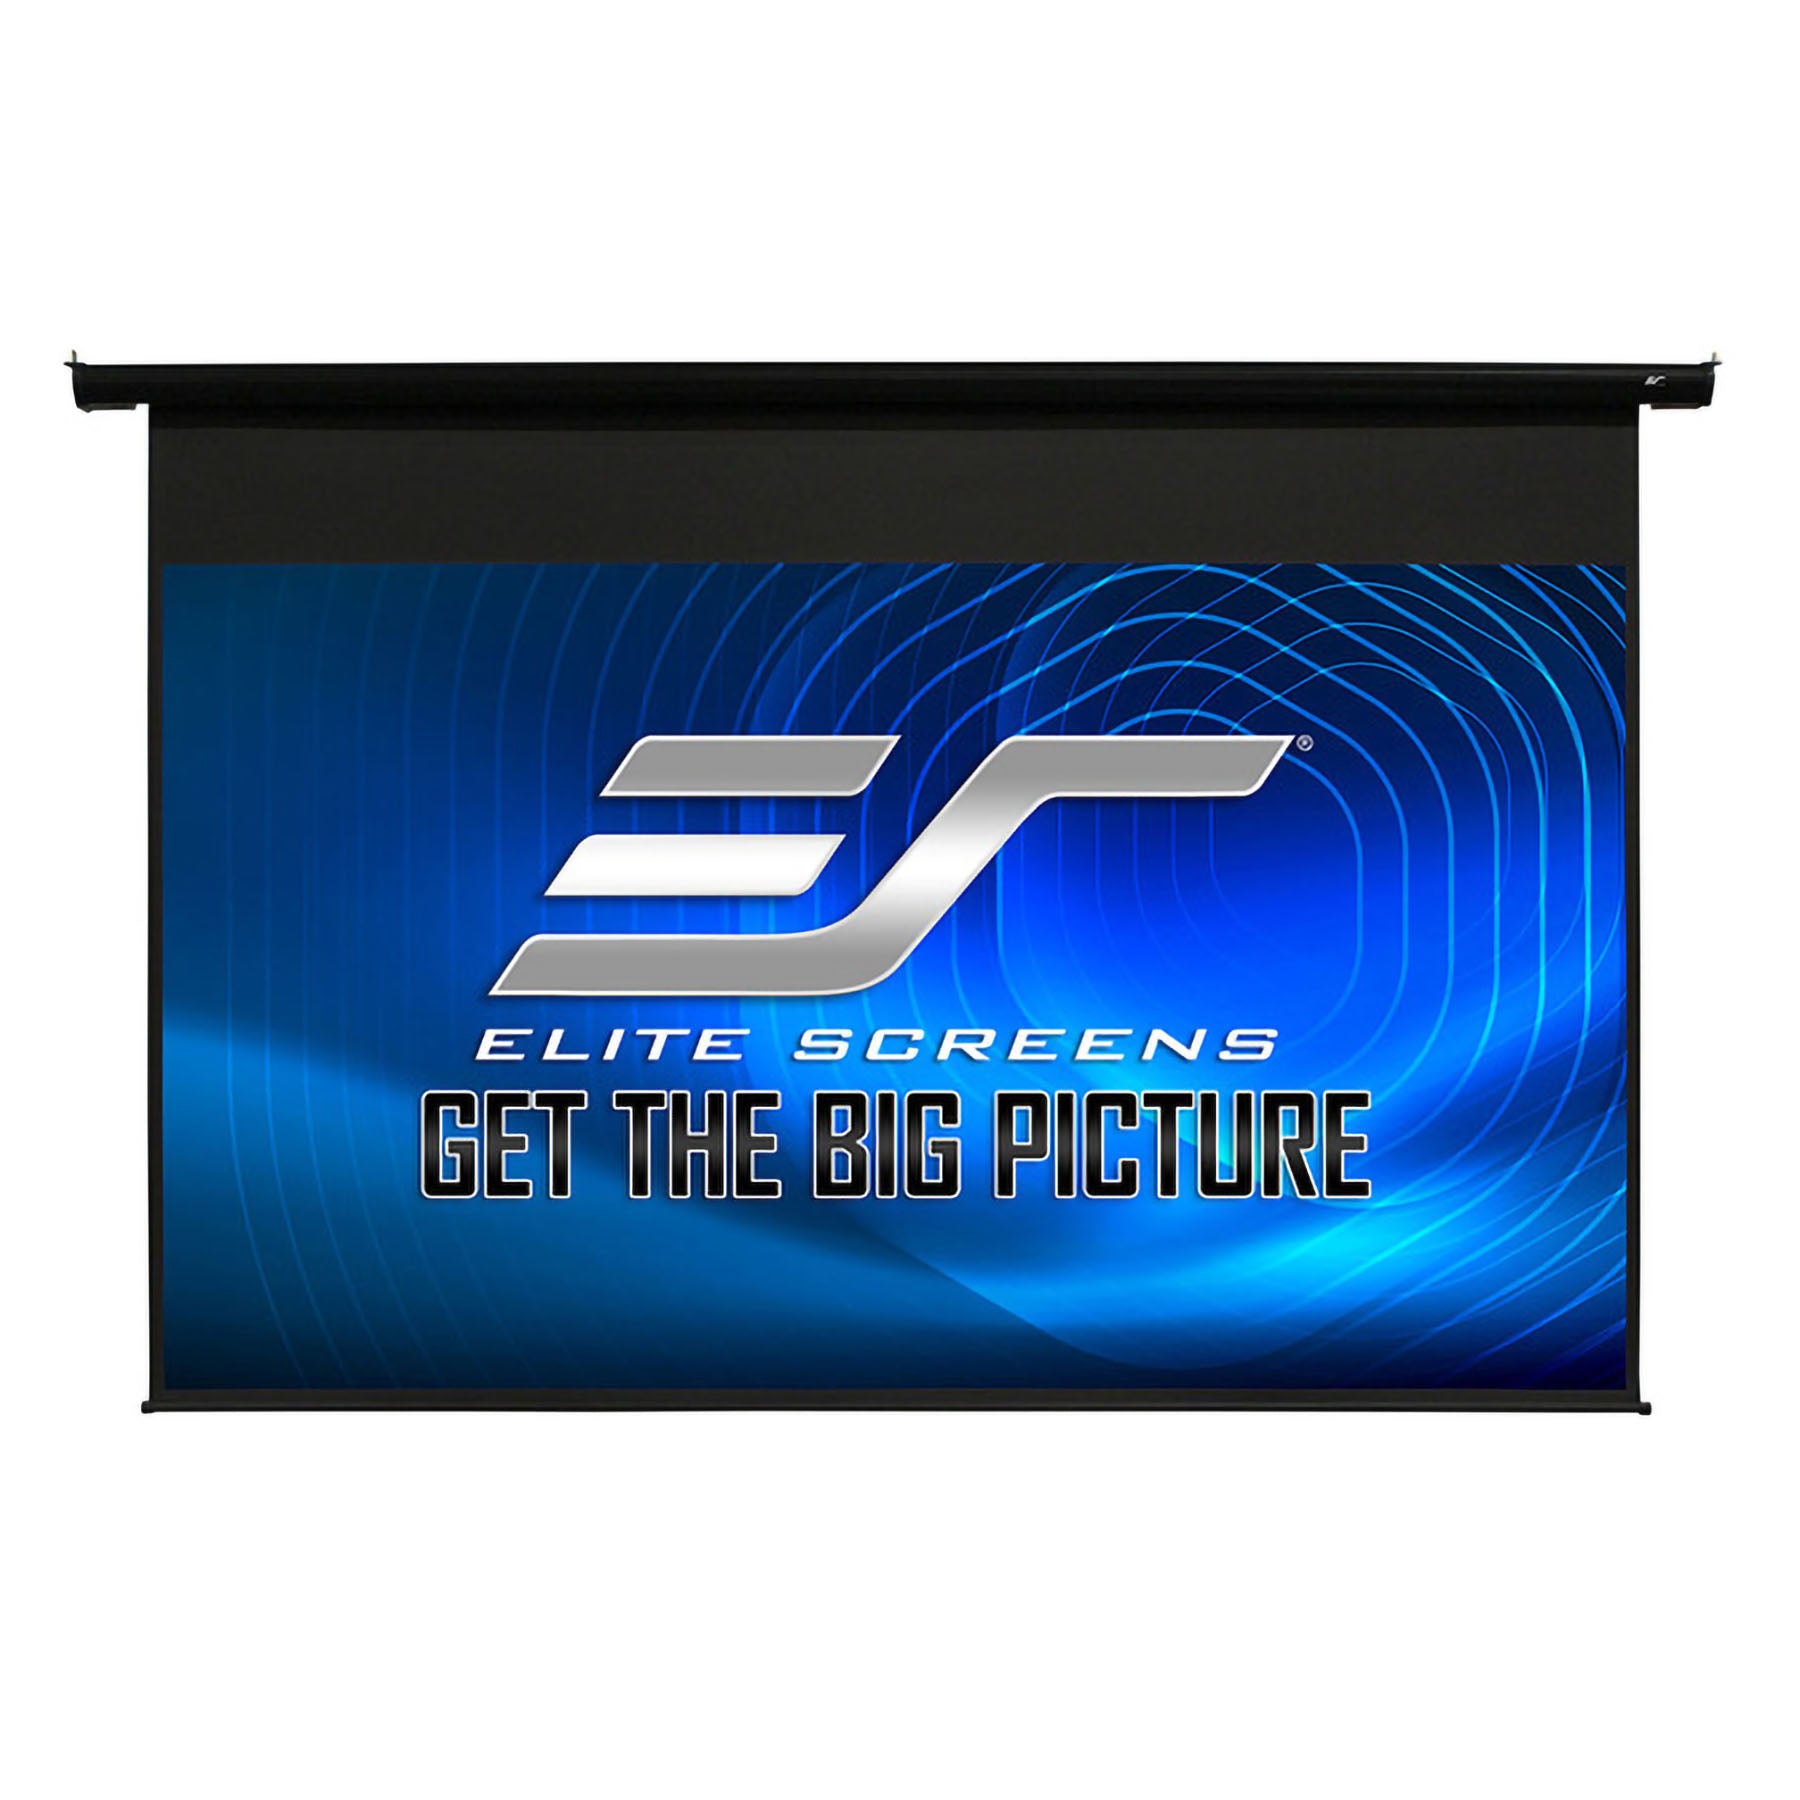 Elite Screens ELECTRIC100H Spectrum 16:9 100" Electric Screen - Black Casing